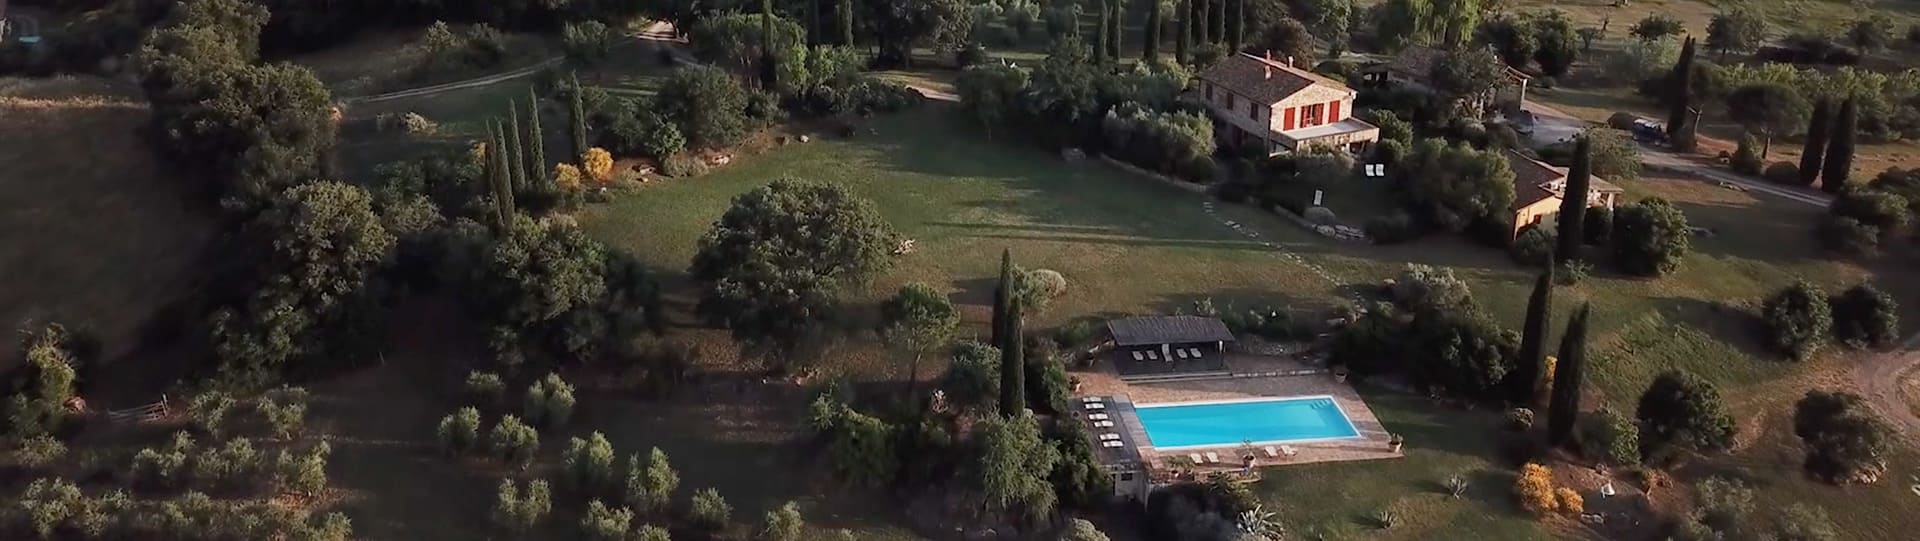 Podere Prataccio preview video drone